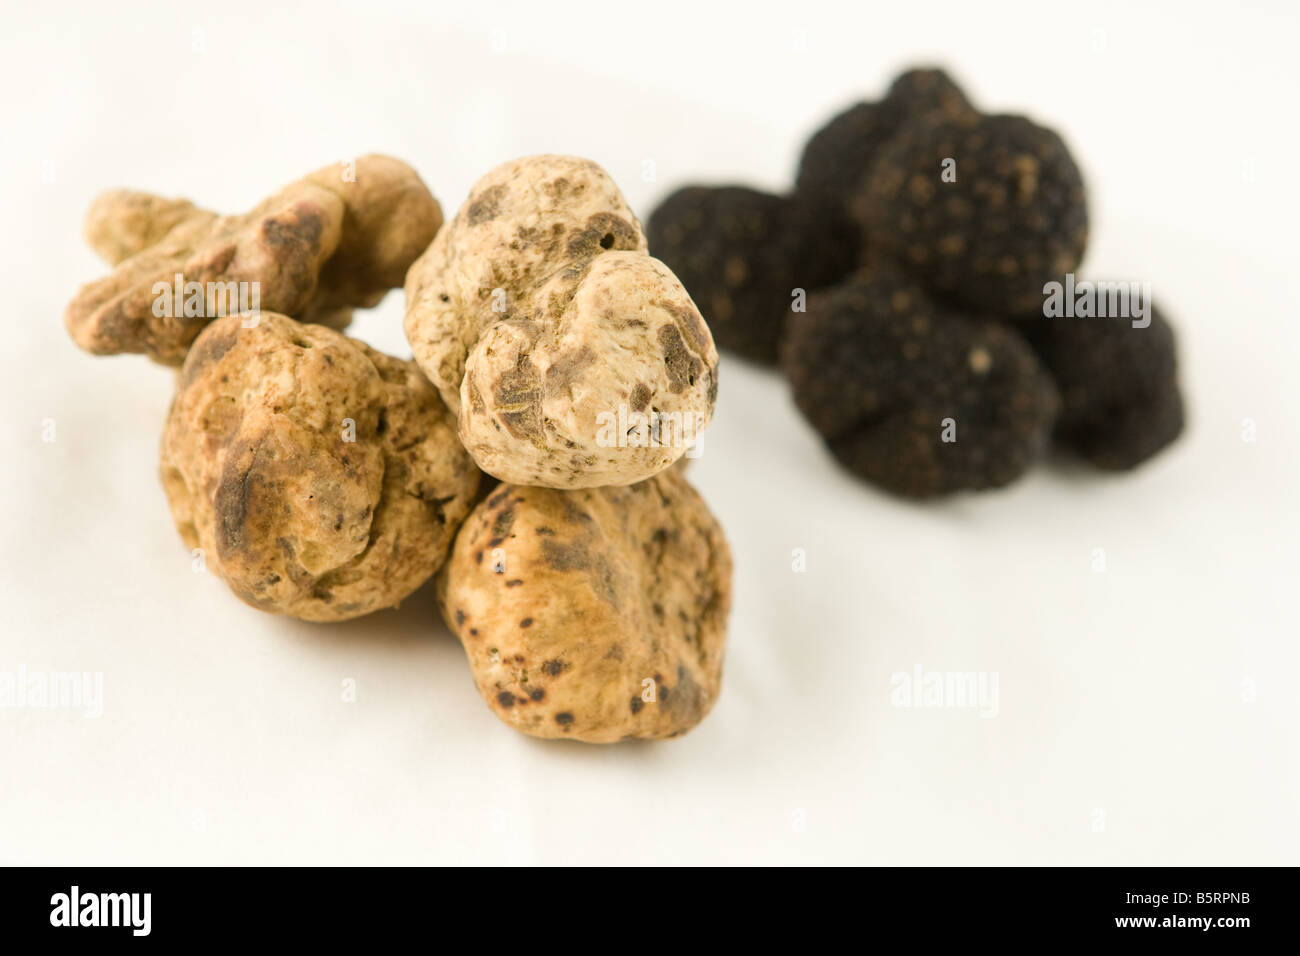 Les truffes blanches et noires, certains des aliments les plus chers sur le marché. Banque D'Images